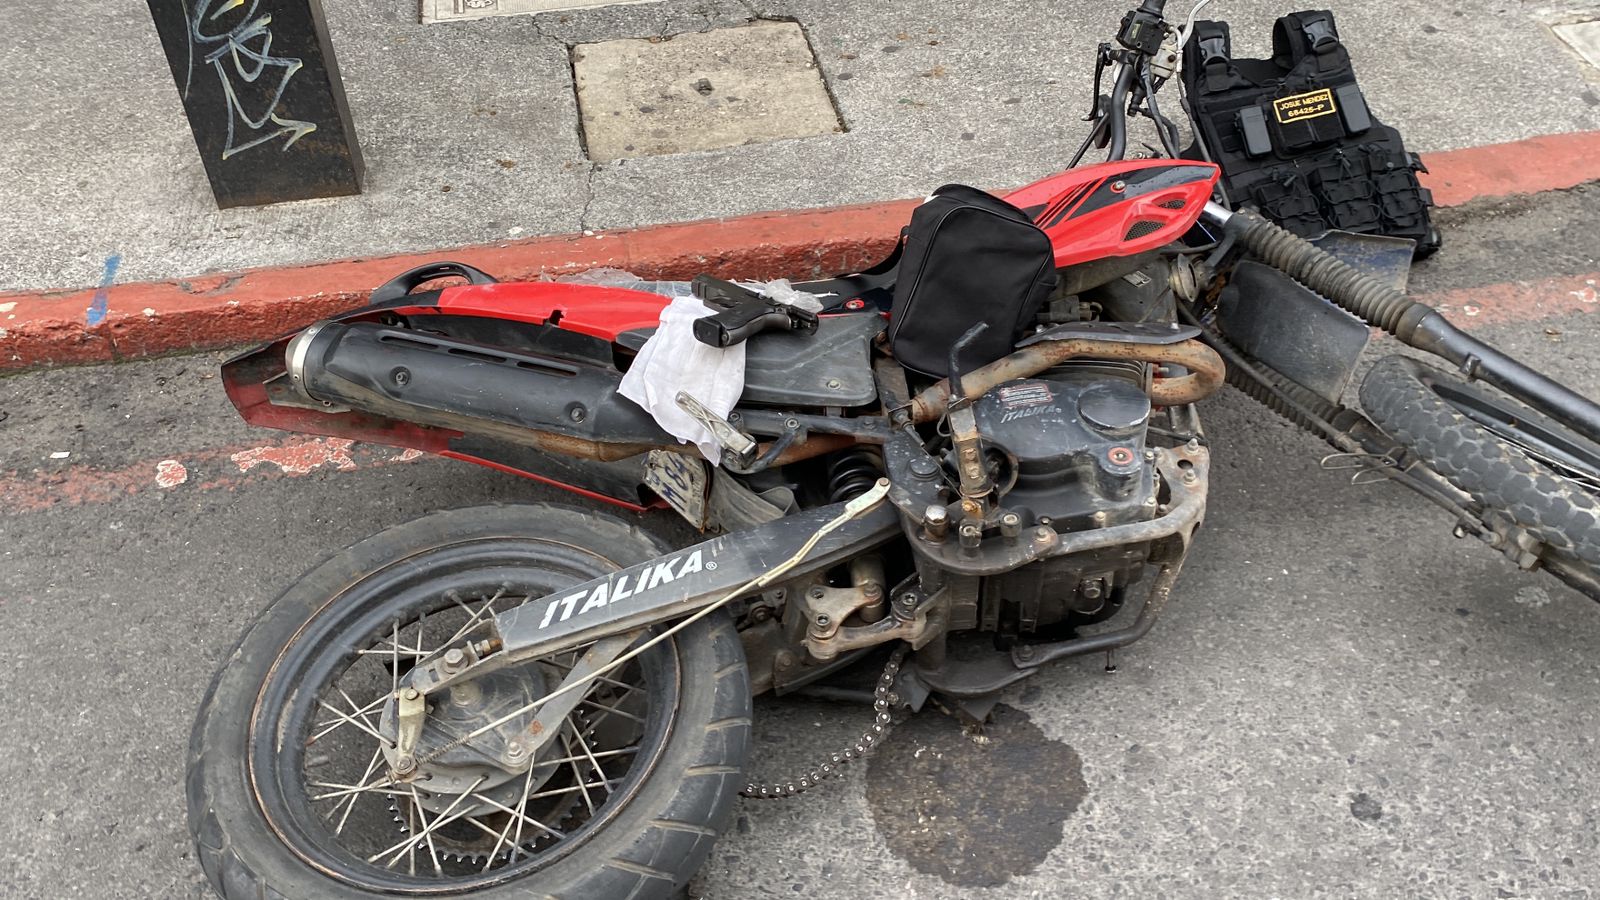 Dos hombres de 24 y 25 años abandonaron esta motocicleta y un arma de fuego después de haber atentado contra un comerciante frente al Hospital General San Juan de Dios. Dos agentes los persiguieron y detuvieron. (Foto Prensa Libre: PNC).